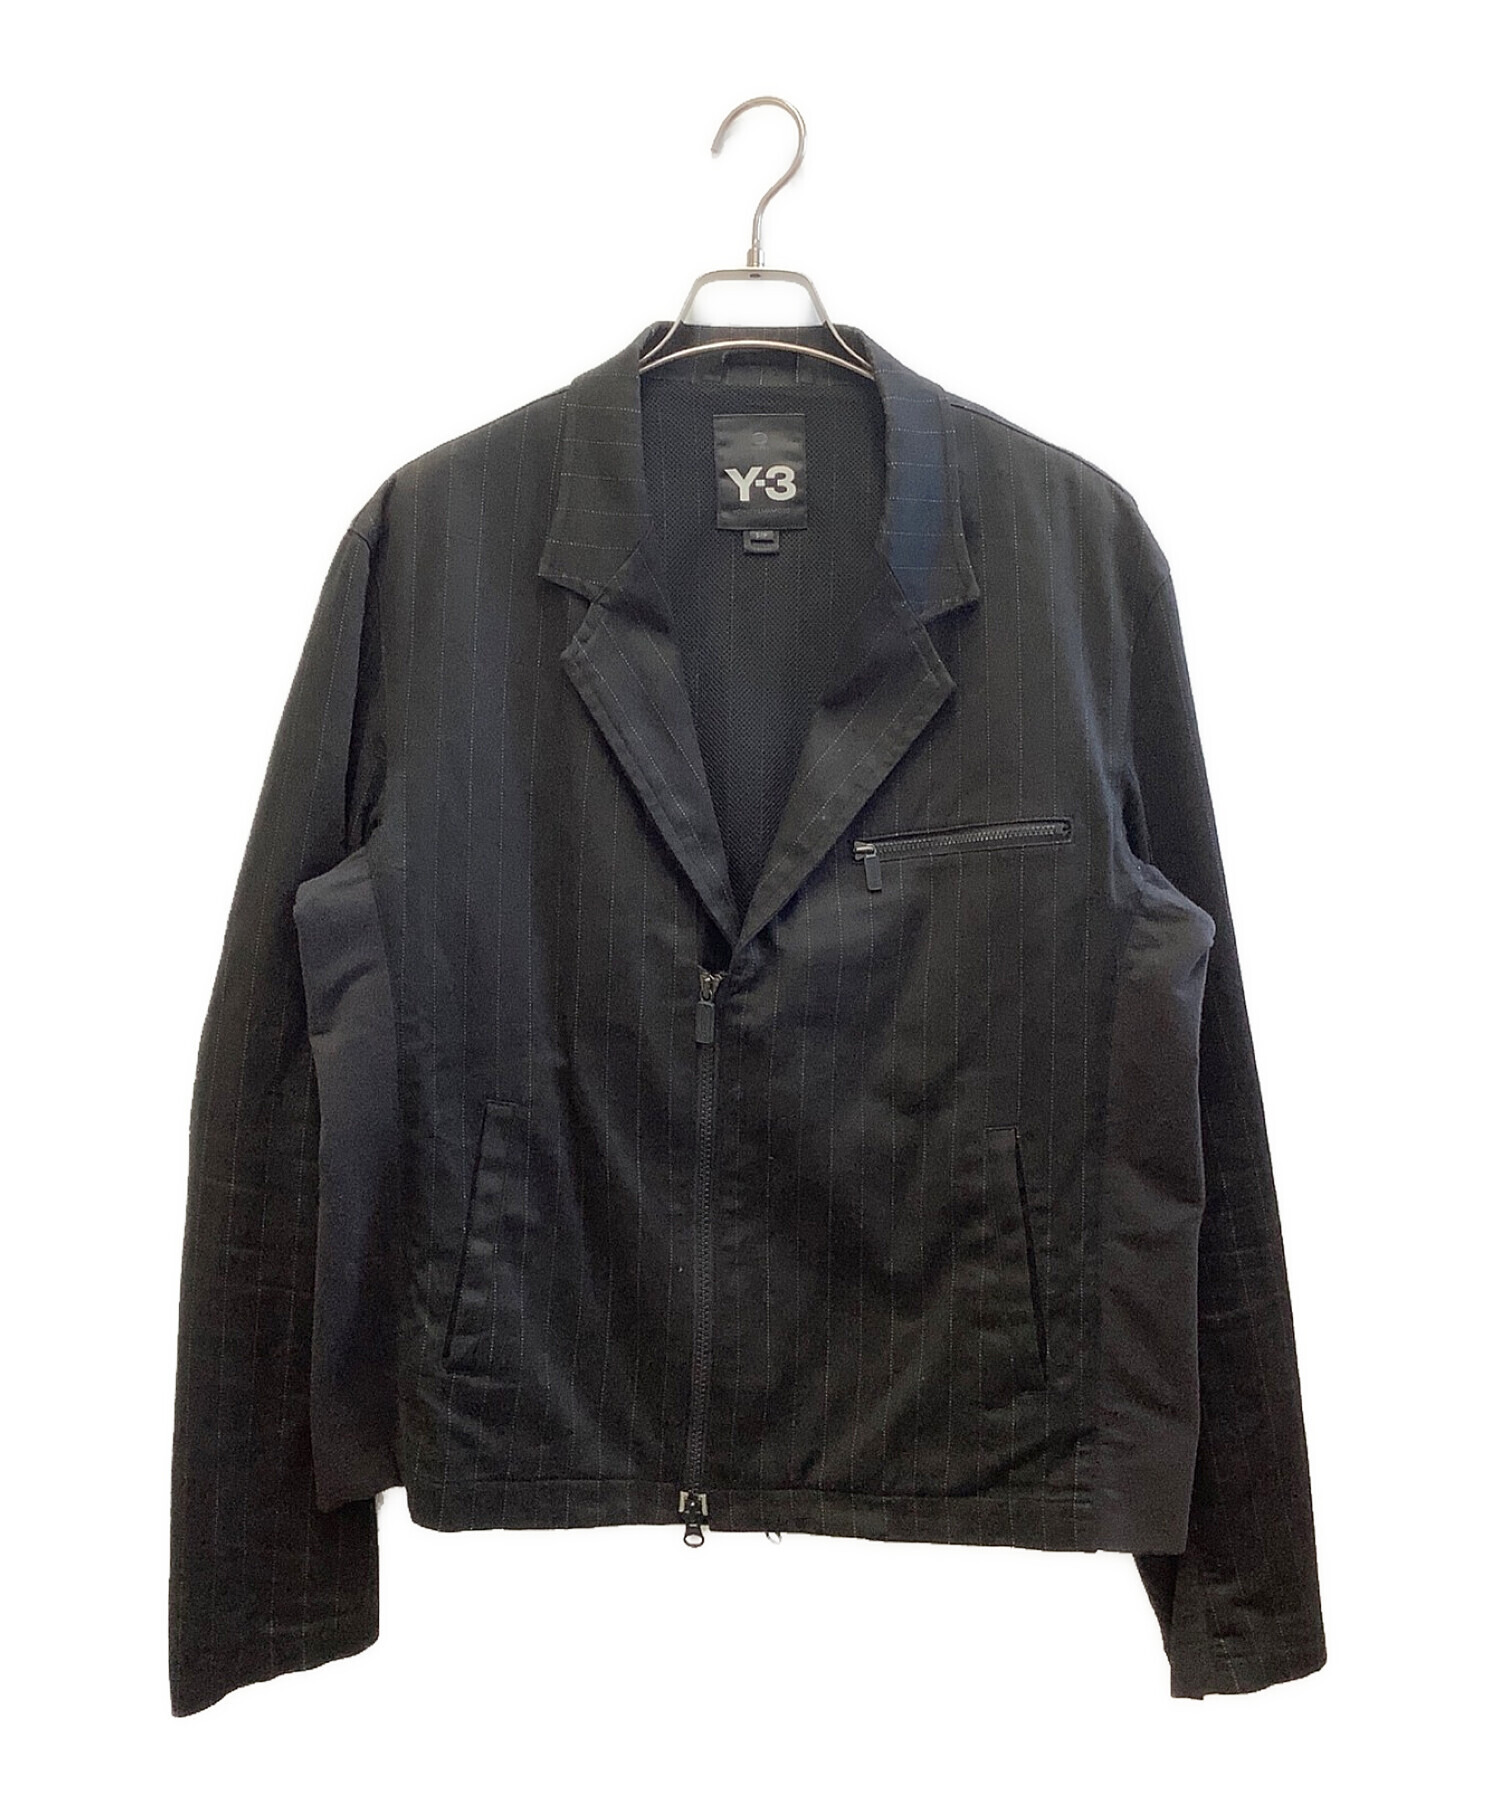 Y-3 (ワイスリー) ジャケット ブラック サイズ:S